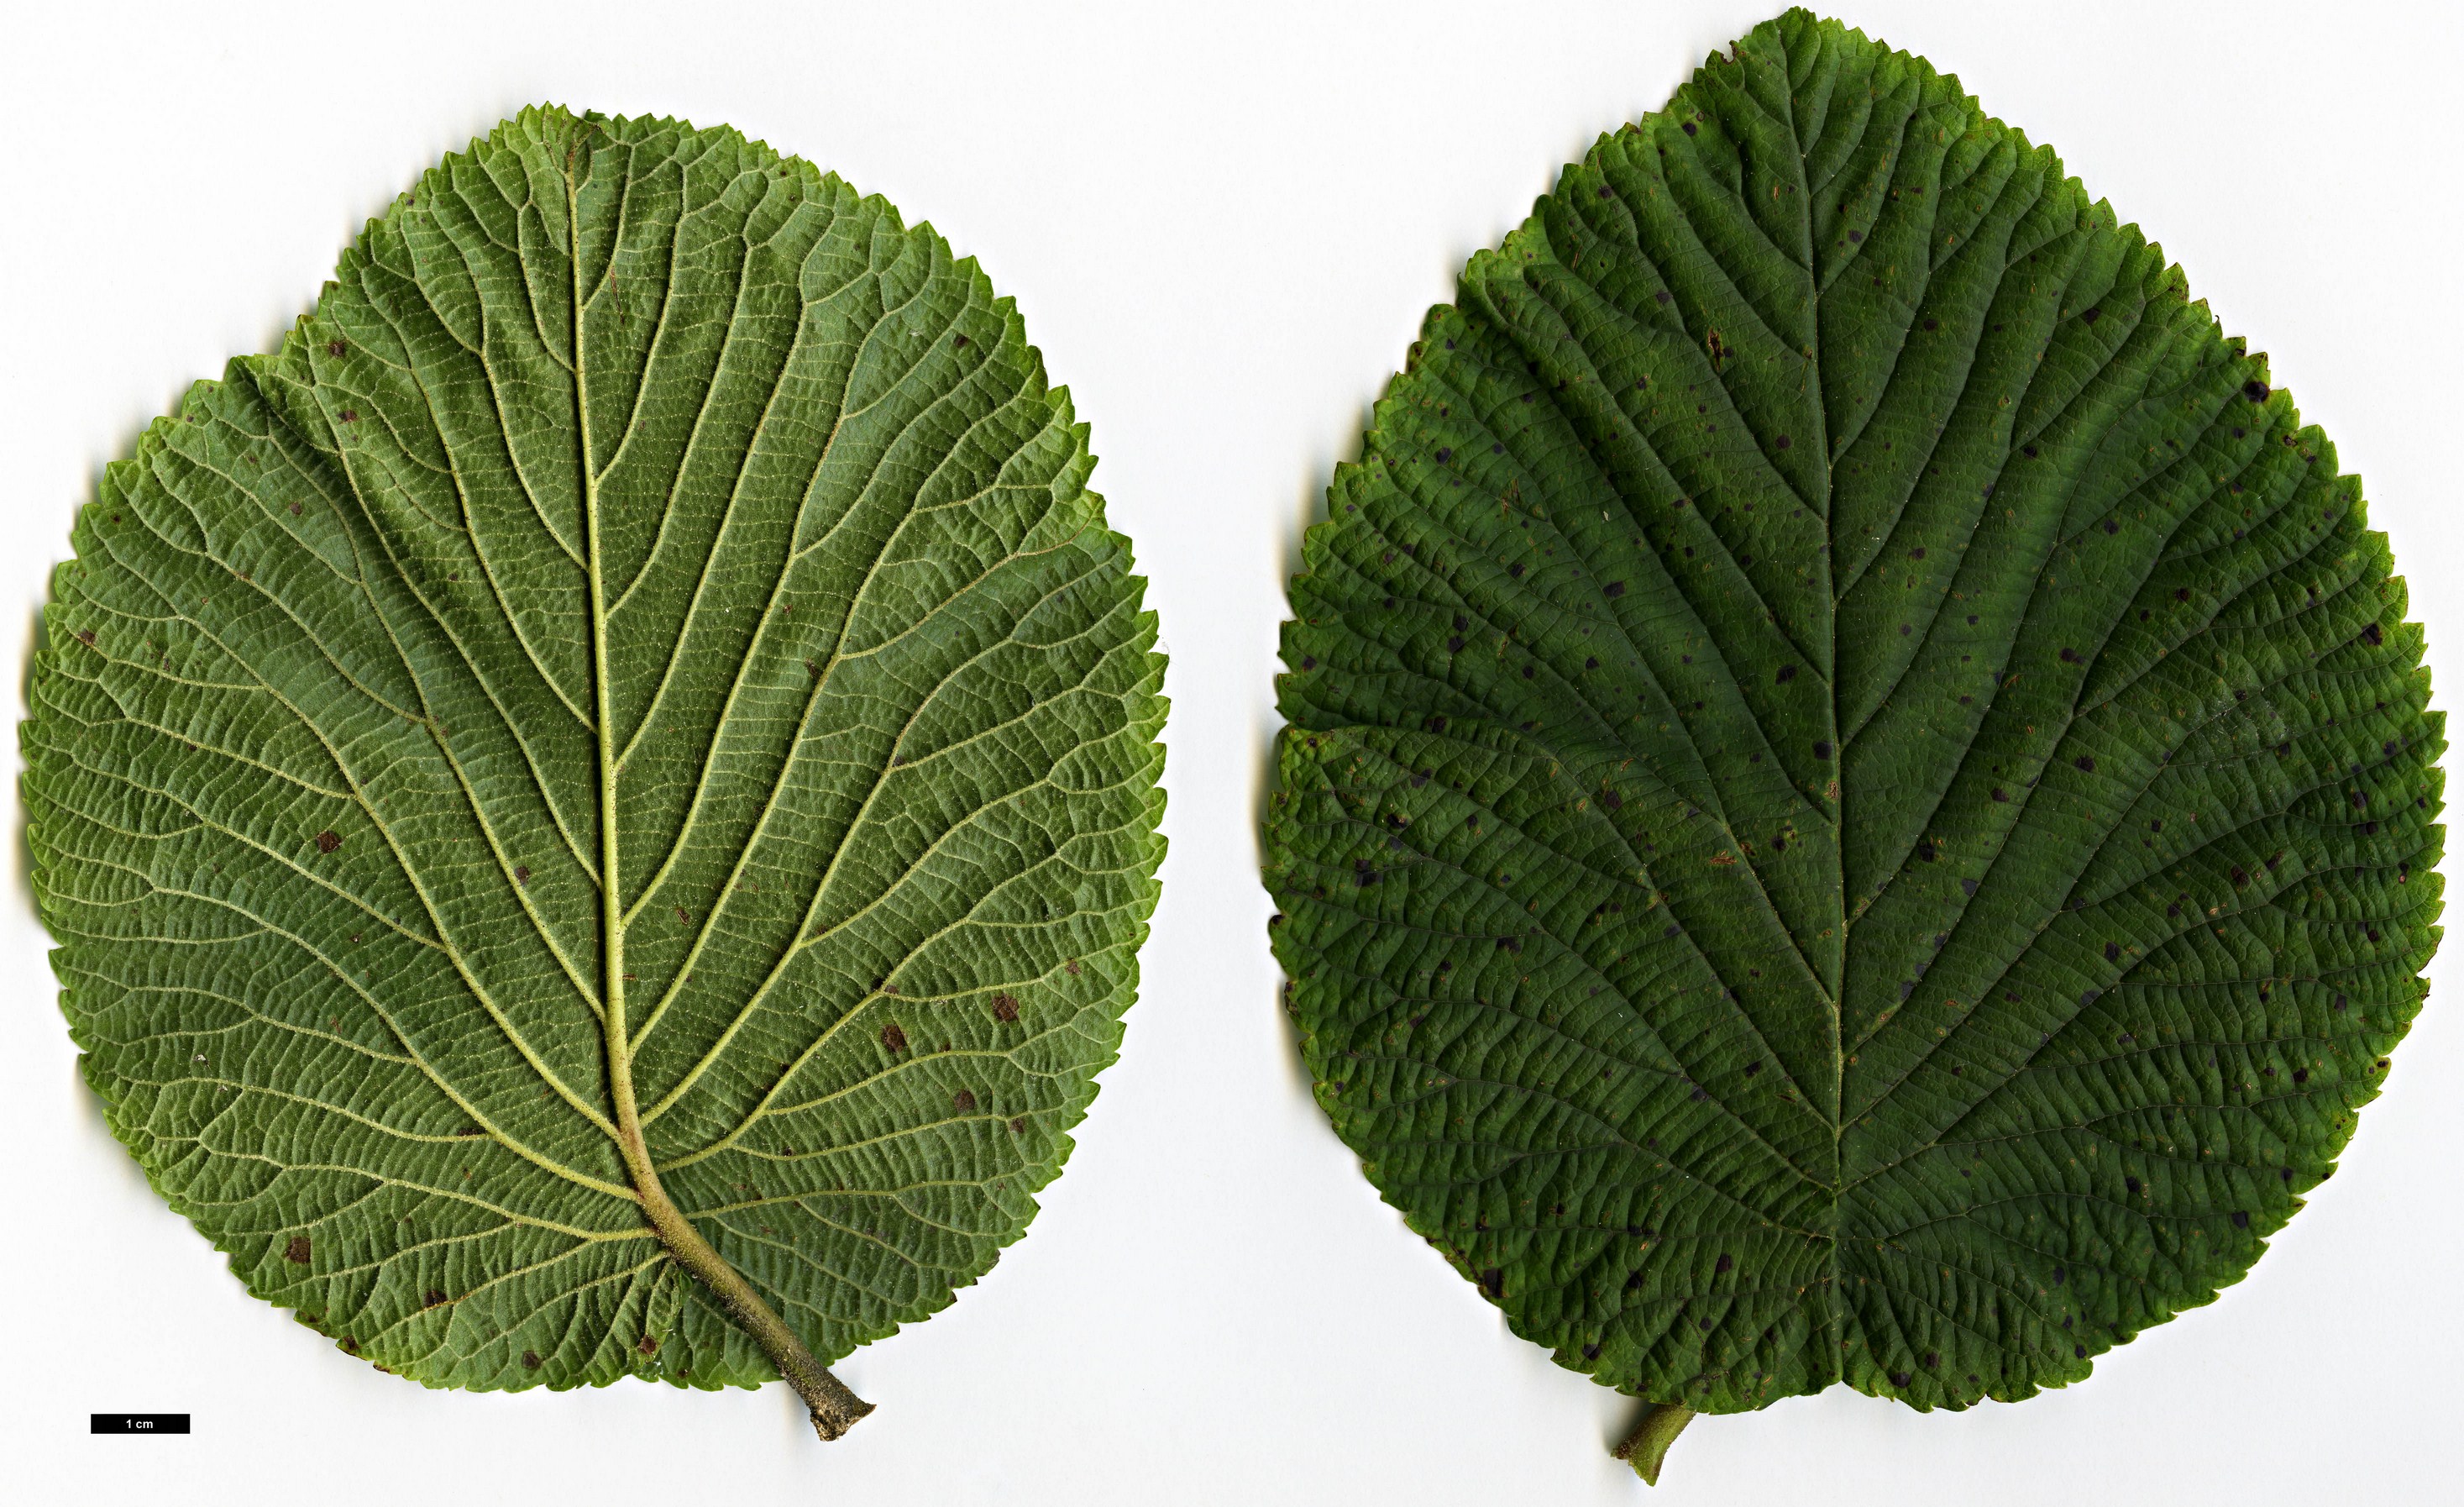 High resolution image: Family: Adoxaceae - Genus: Viburnum - Taxon: furcatum